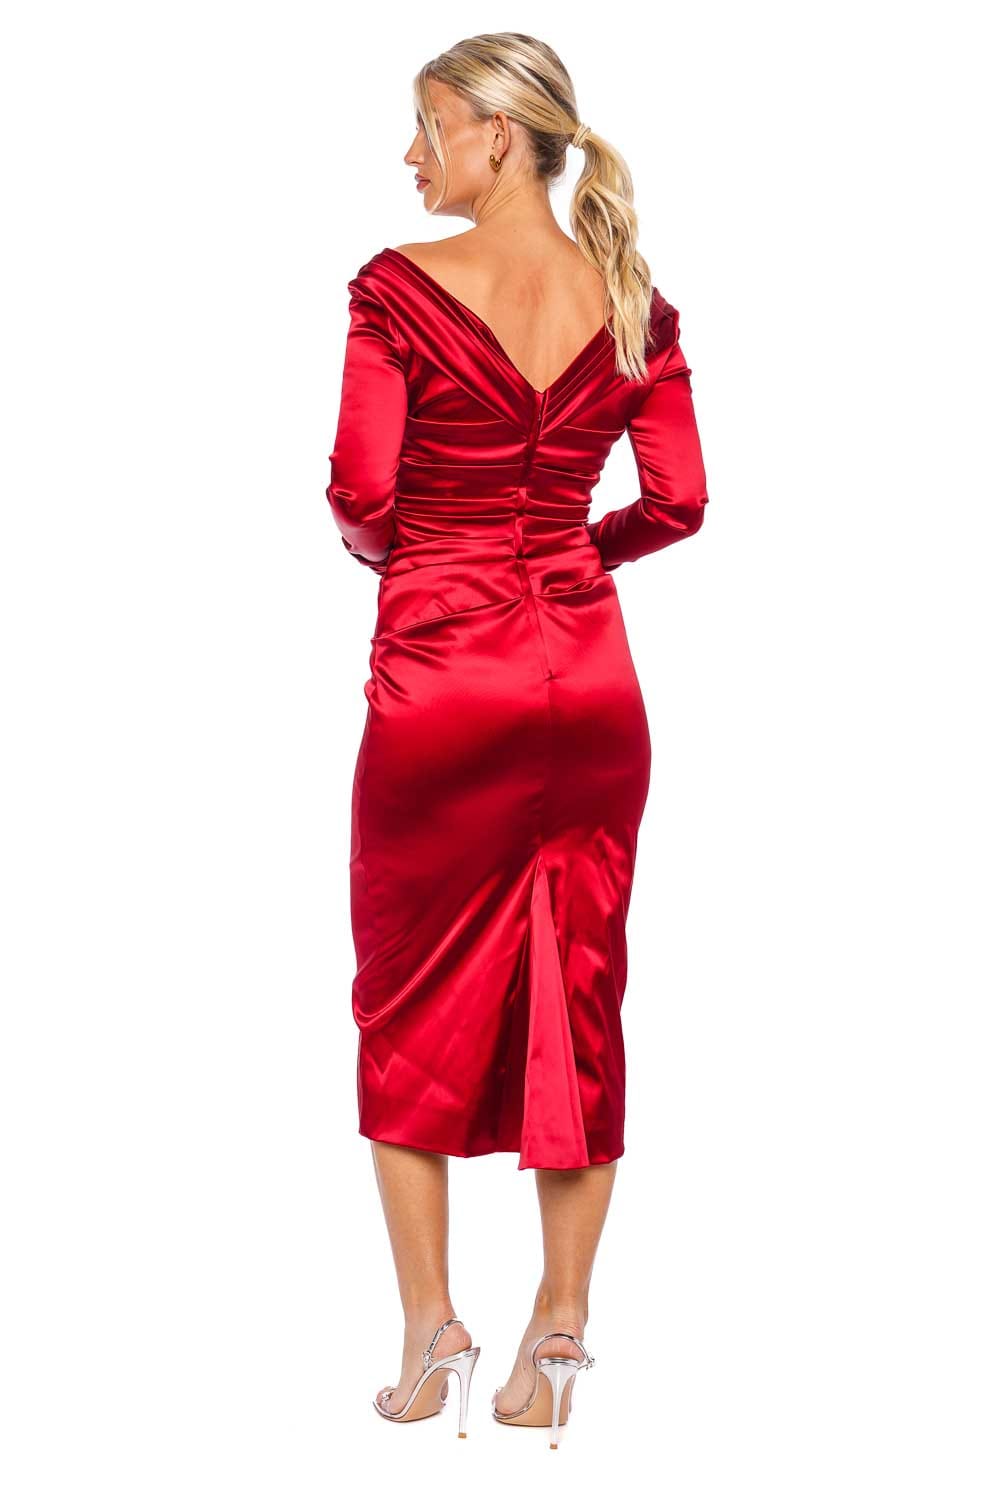 Dolce & Gabbana Red Long Sleeve Dress F6DJFT FURAD R0384 Grenade